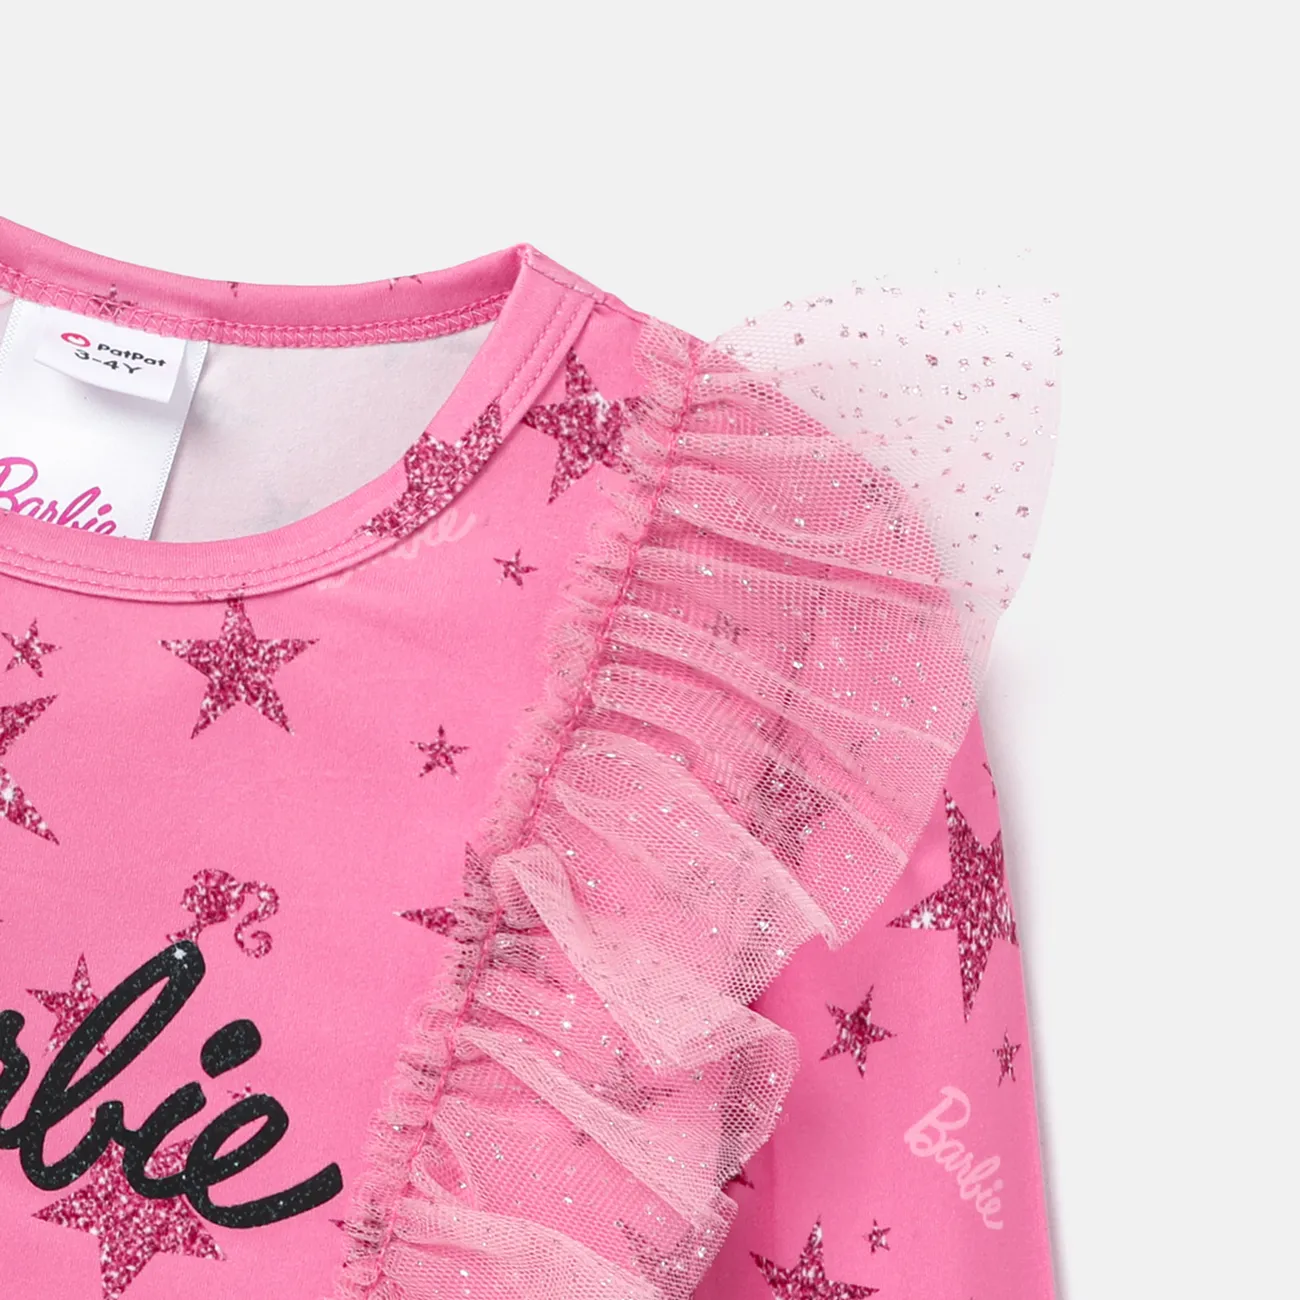 Barbie Niño pequeño Chica Volantes Infantil Manga larga Camiseta Rosado big image 1